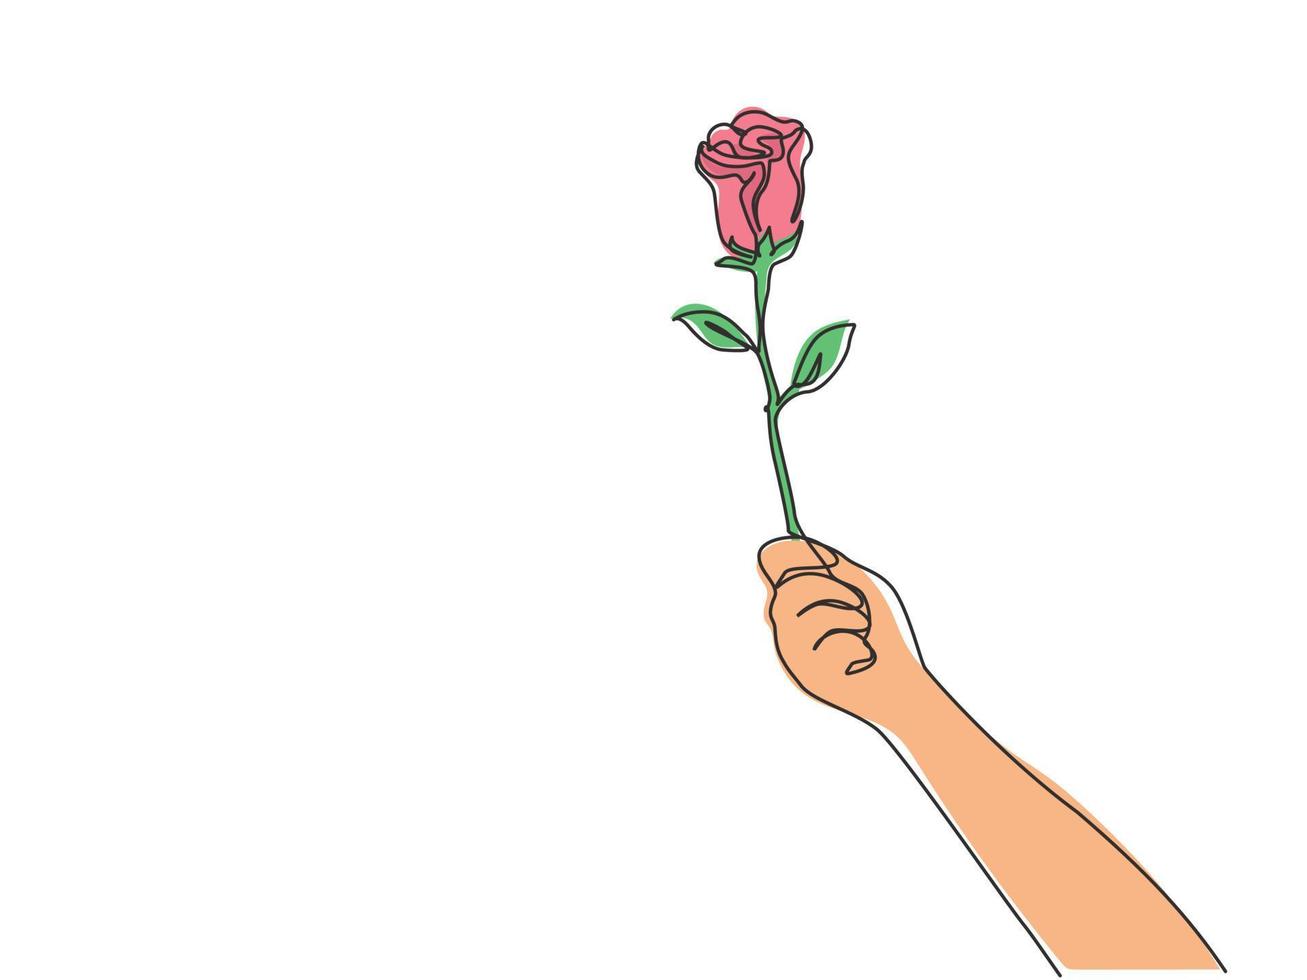 um único desenho de linha de mão segurando flor rosa linda romântica fresca. cartão, convite, logotipo, banner, conceito de cartaz. ilustração em vetor desenho gráfico em linha contínua dinâmica